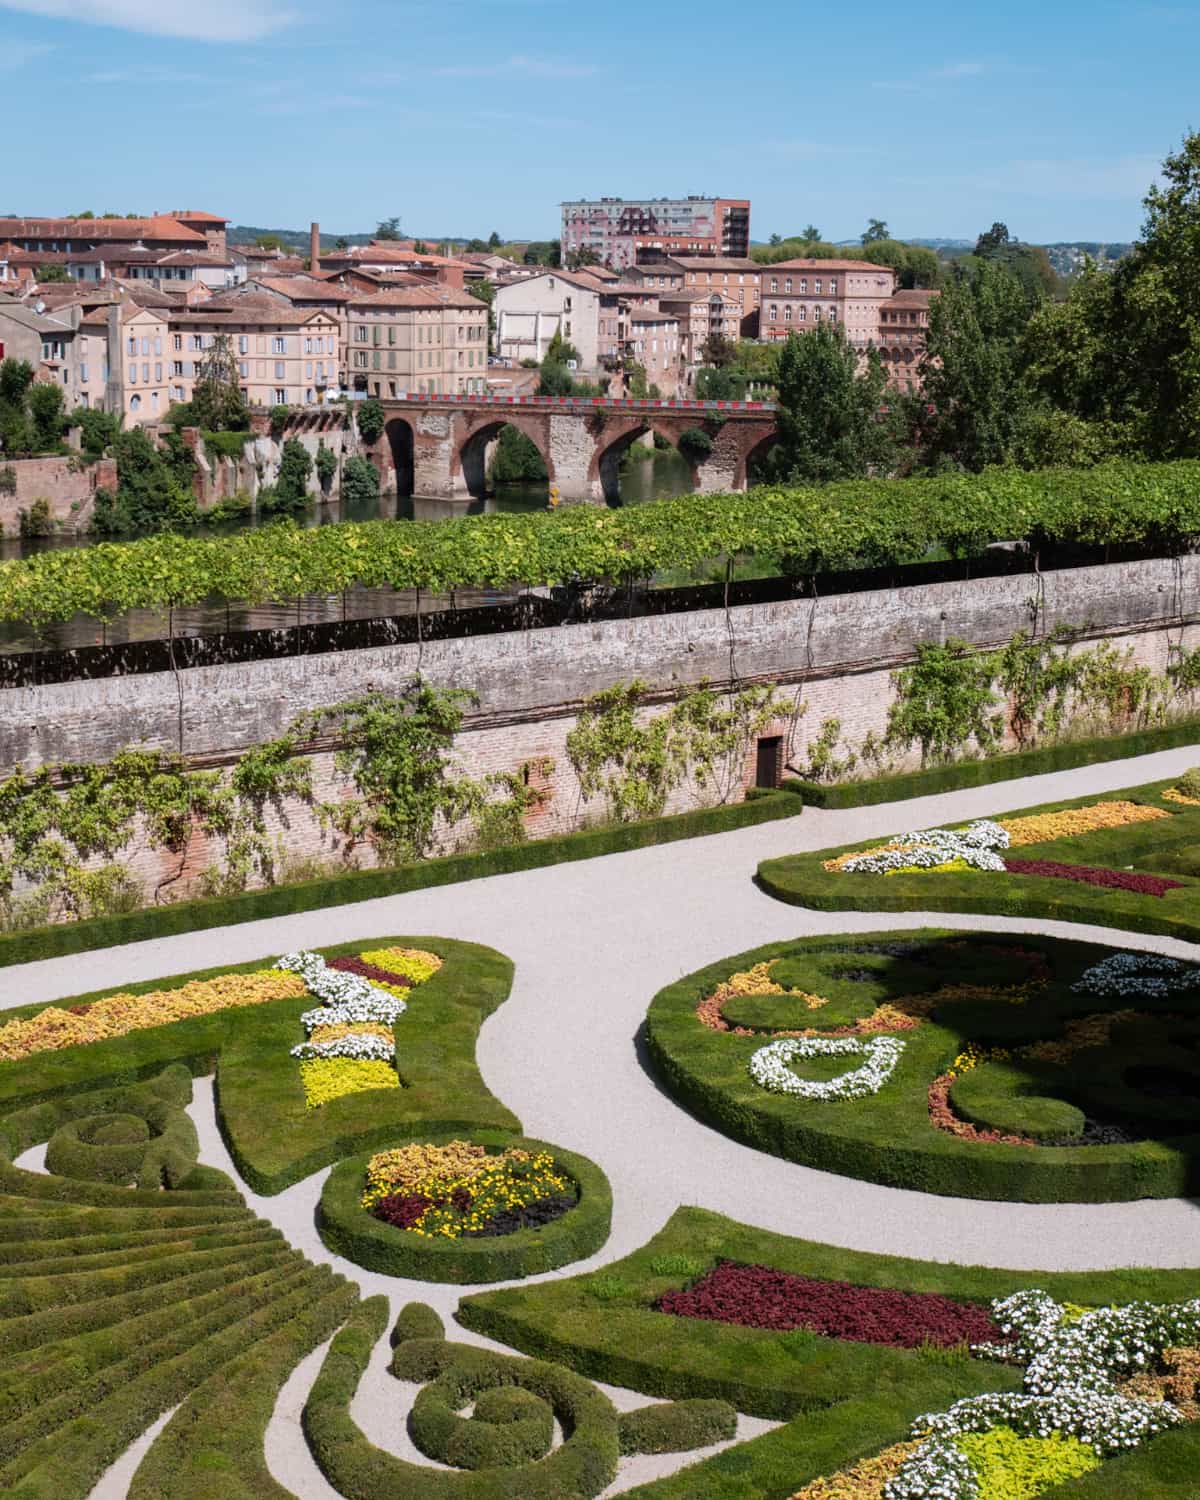 Gardens of Palais de la Berbie, Albi, France with a view of Albi city